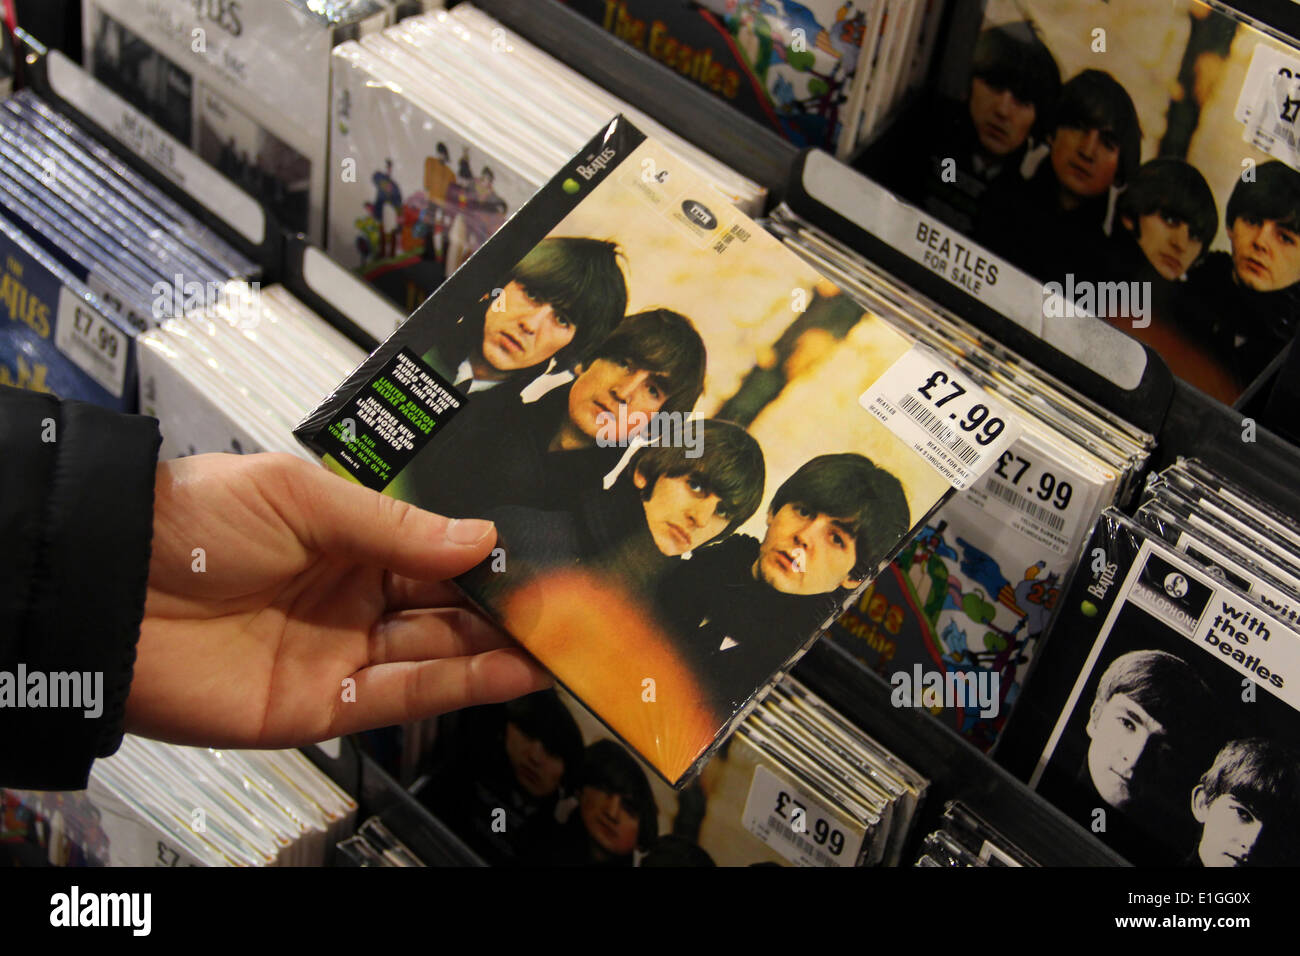 London: Beatles-Alben auf HMV speichern, 2014/01/10 Stockfoto